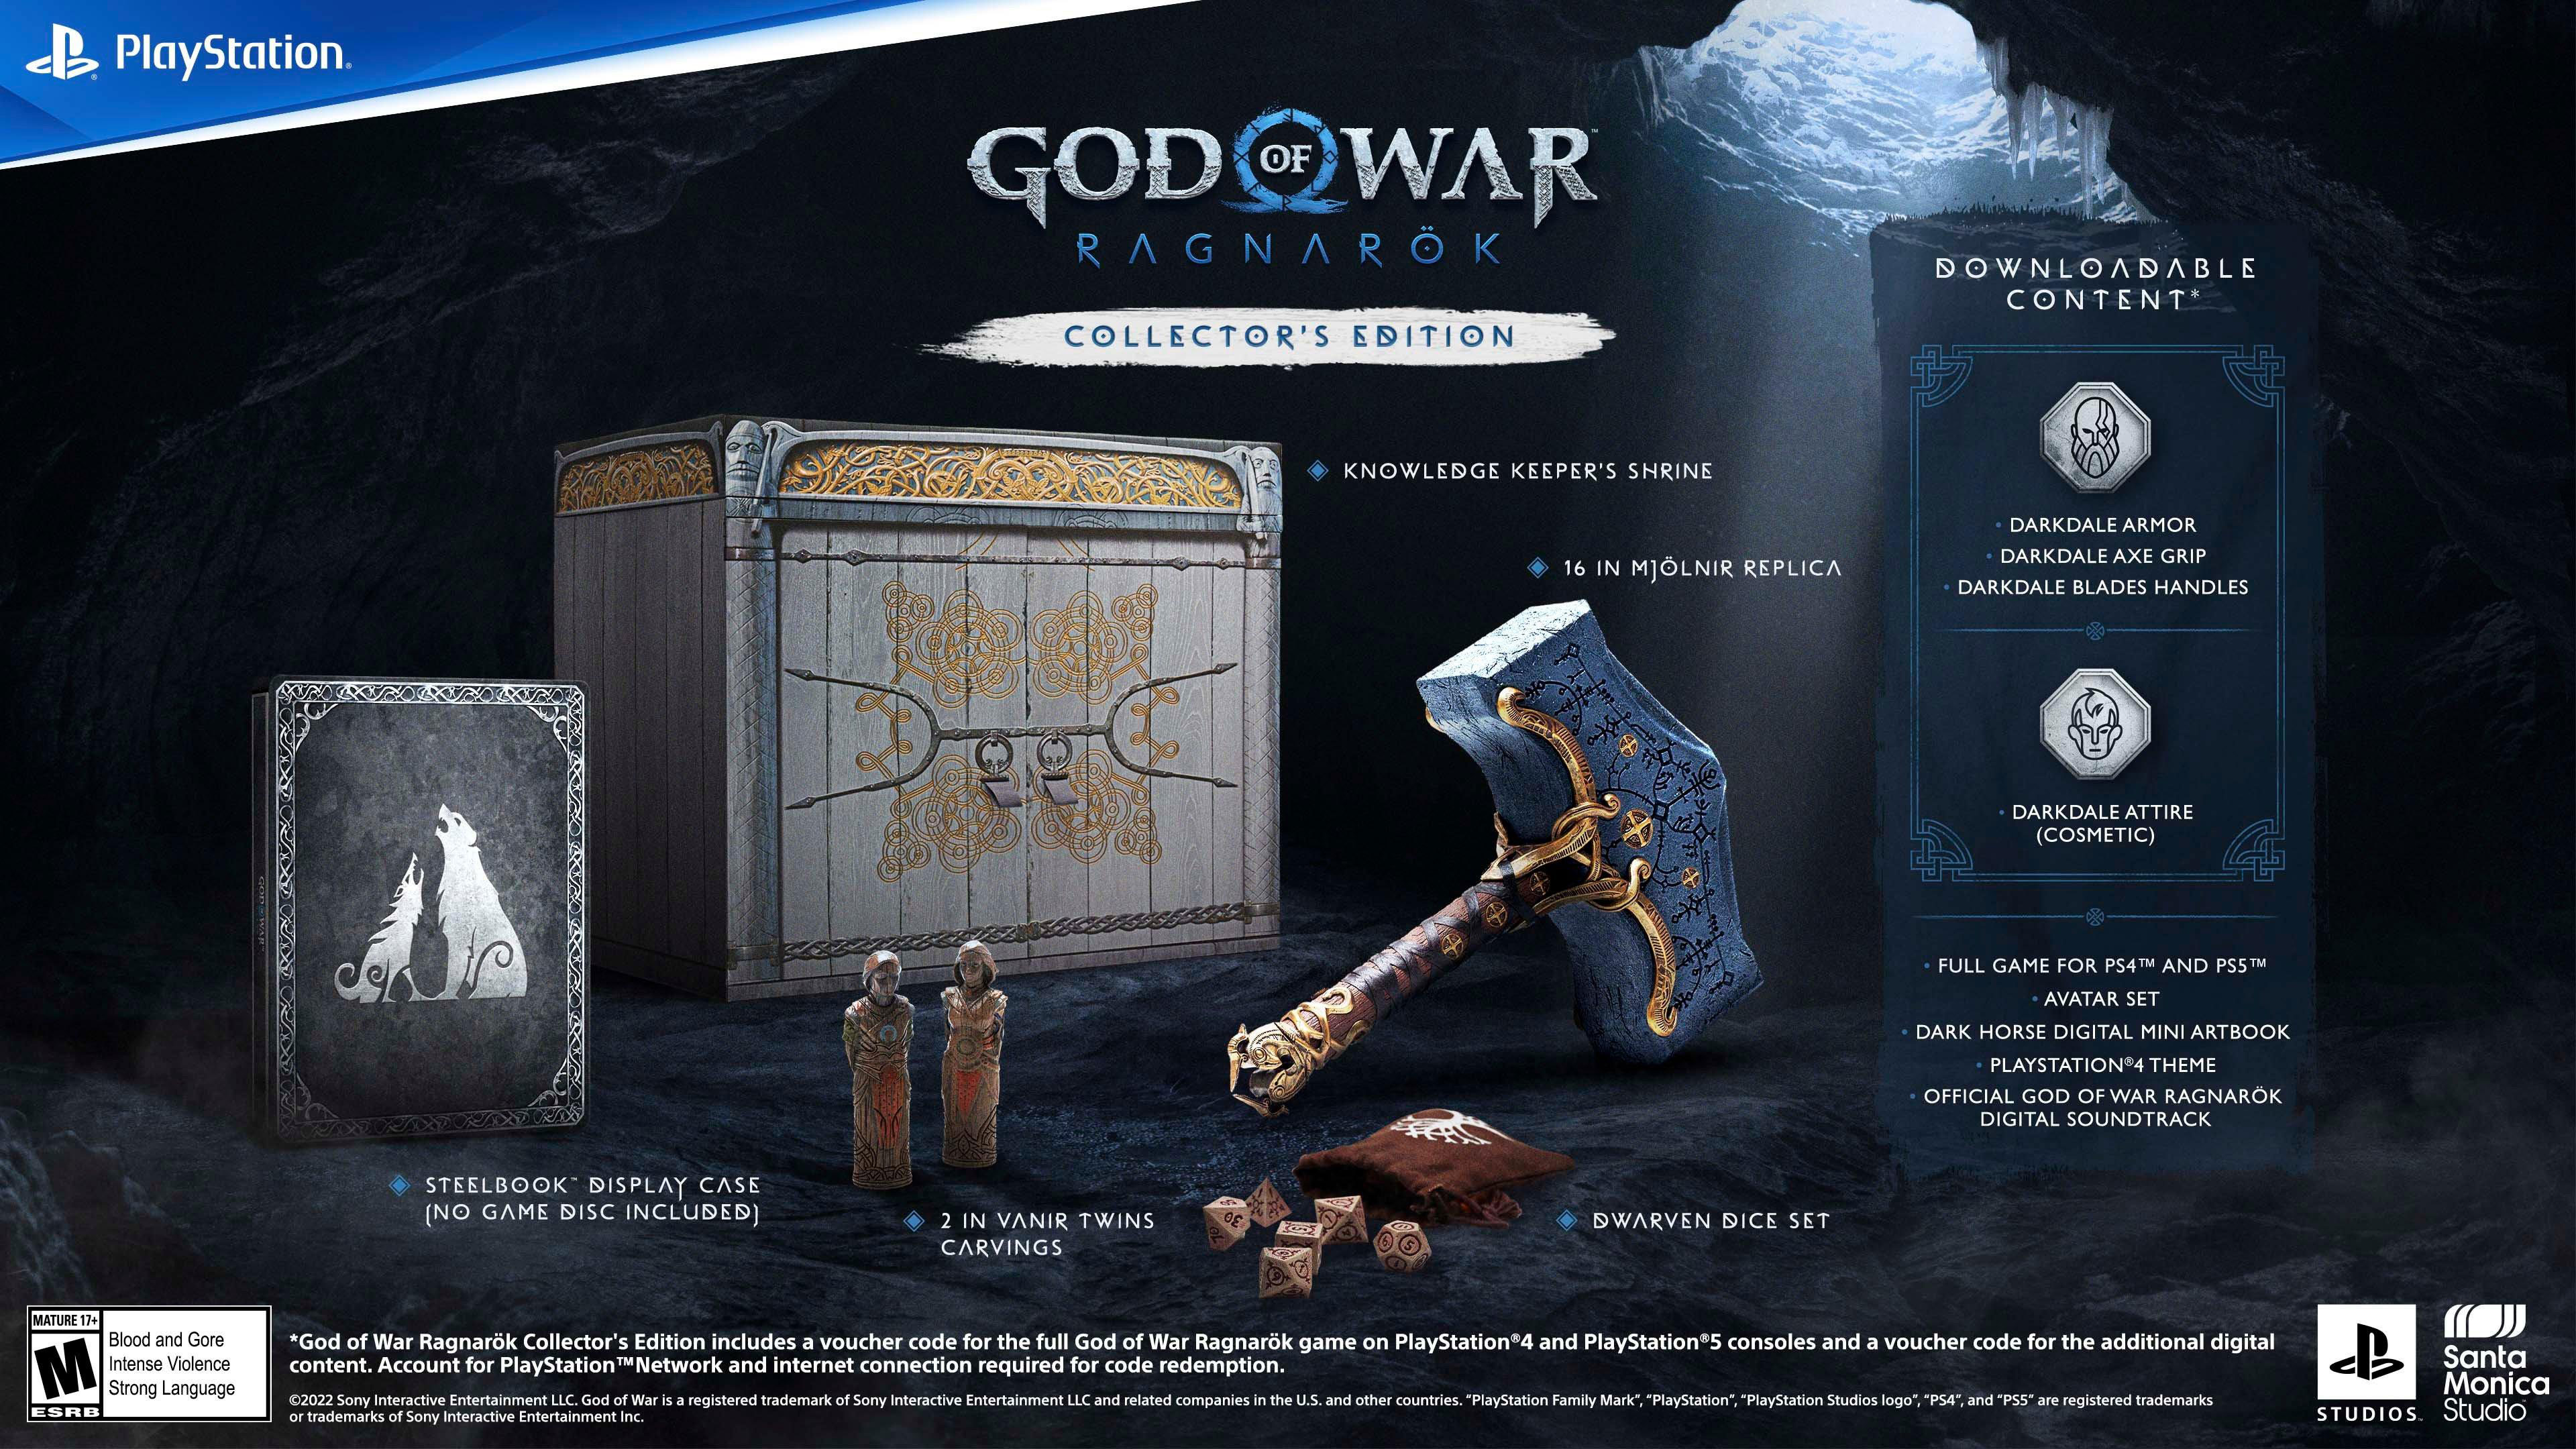 Jogo God of War: Ragnarok (Edição de Lançamento) - PS4 em Promoção